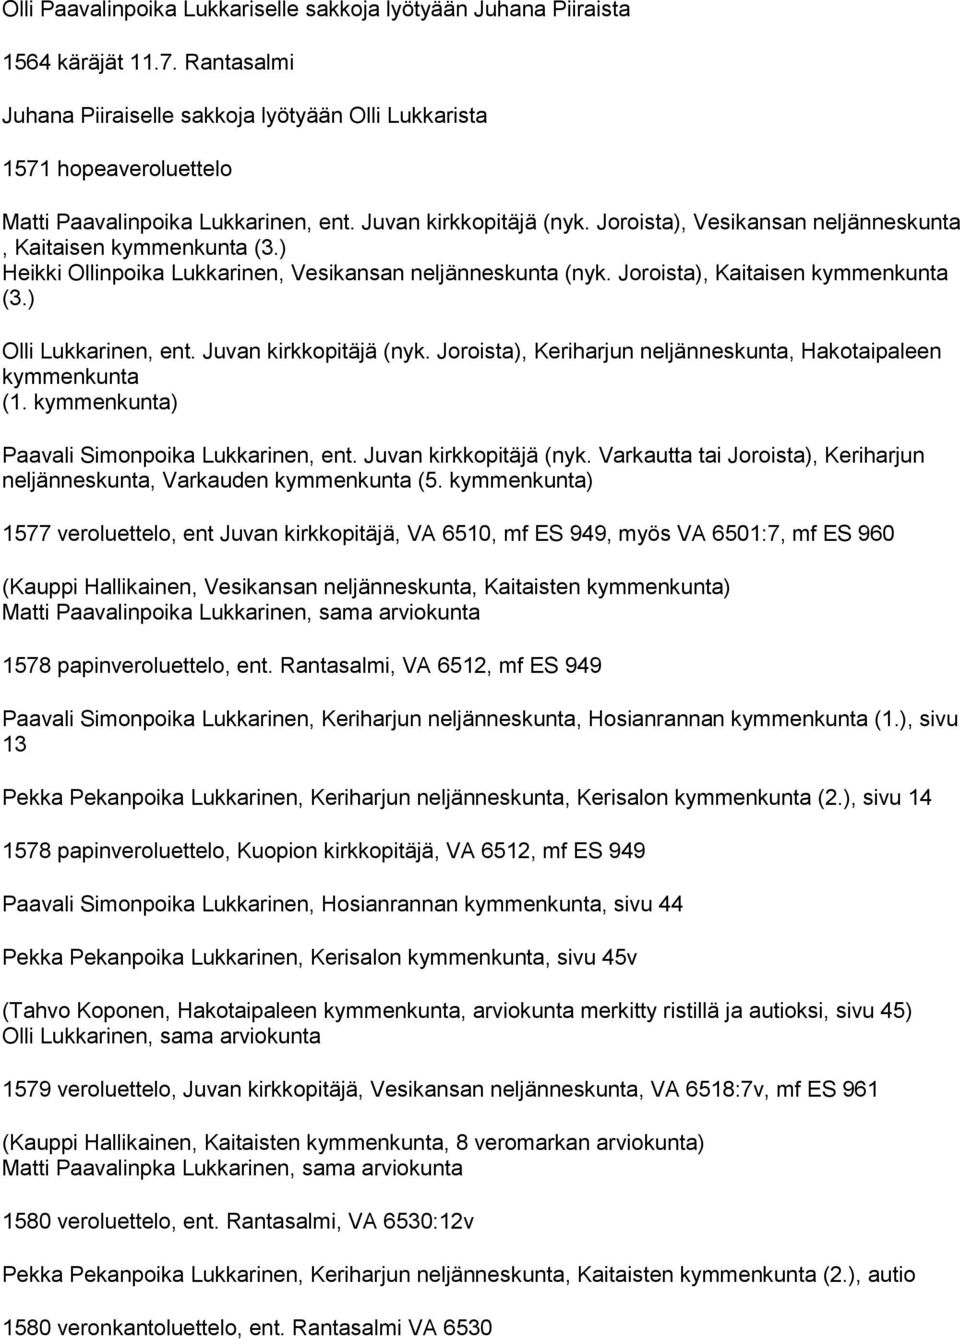 Joroista), Vesikansan neljänneskunta, Kaitaisen kymmenkunta (3.) Heikki Ollinpoika Lukkarinen, Vesikansan neljänneskunta (nyk. Joroista), Kaitaisen kymmenkunta (3.) Olli Lukkarinen, ent.